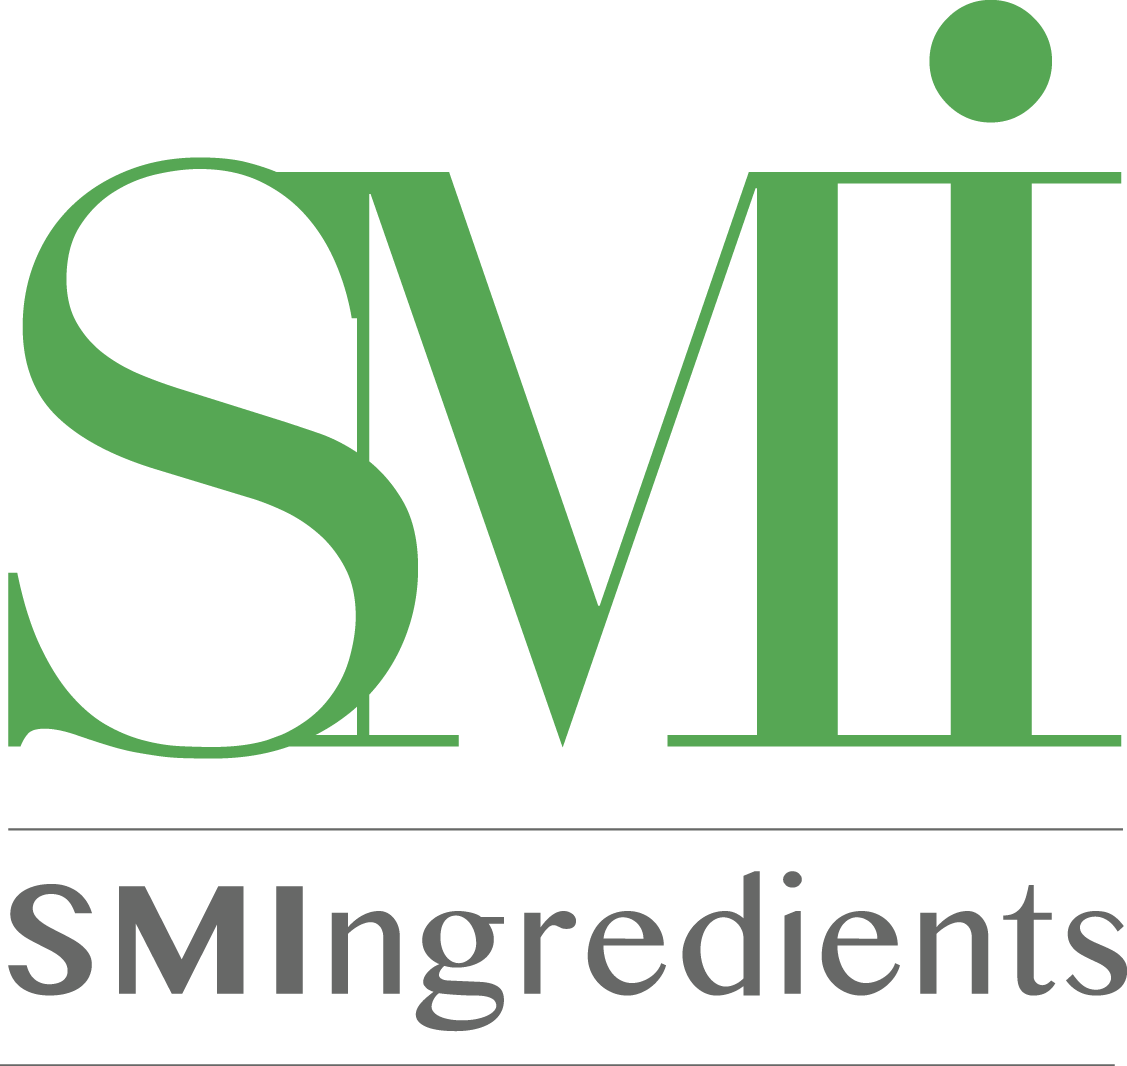 SMIngredients